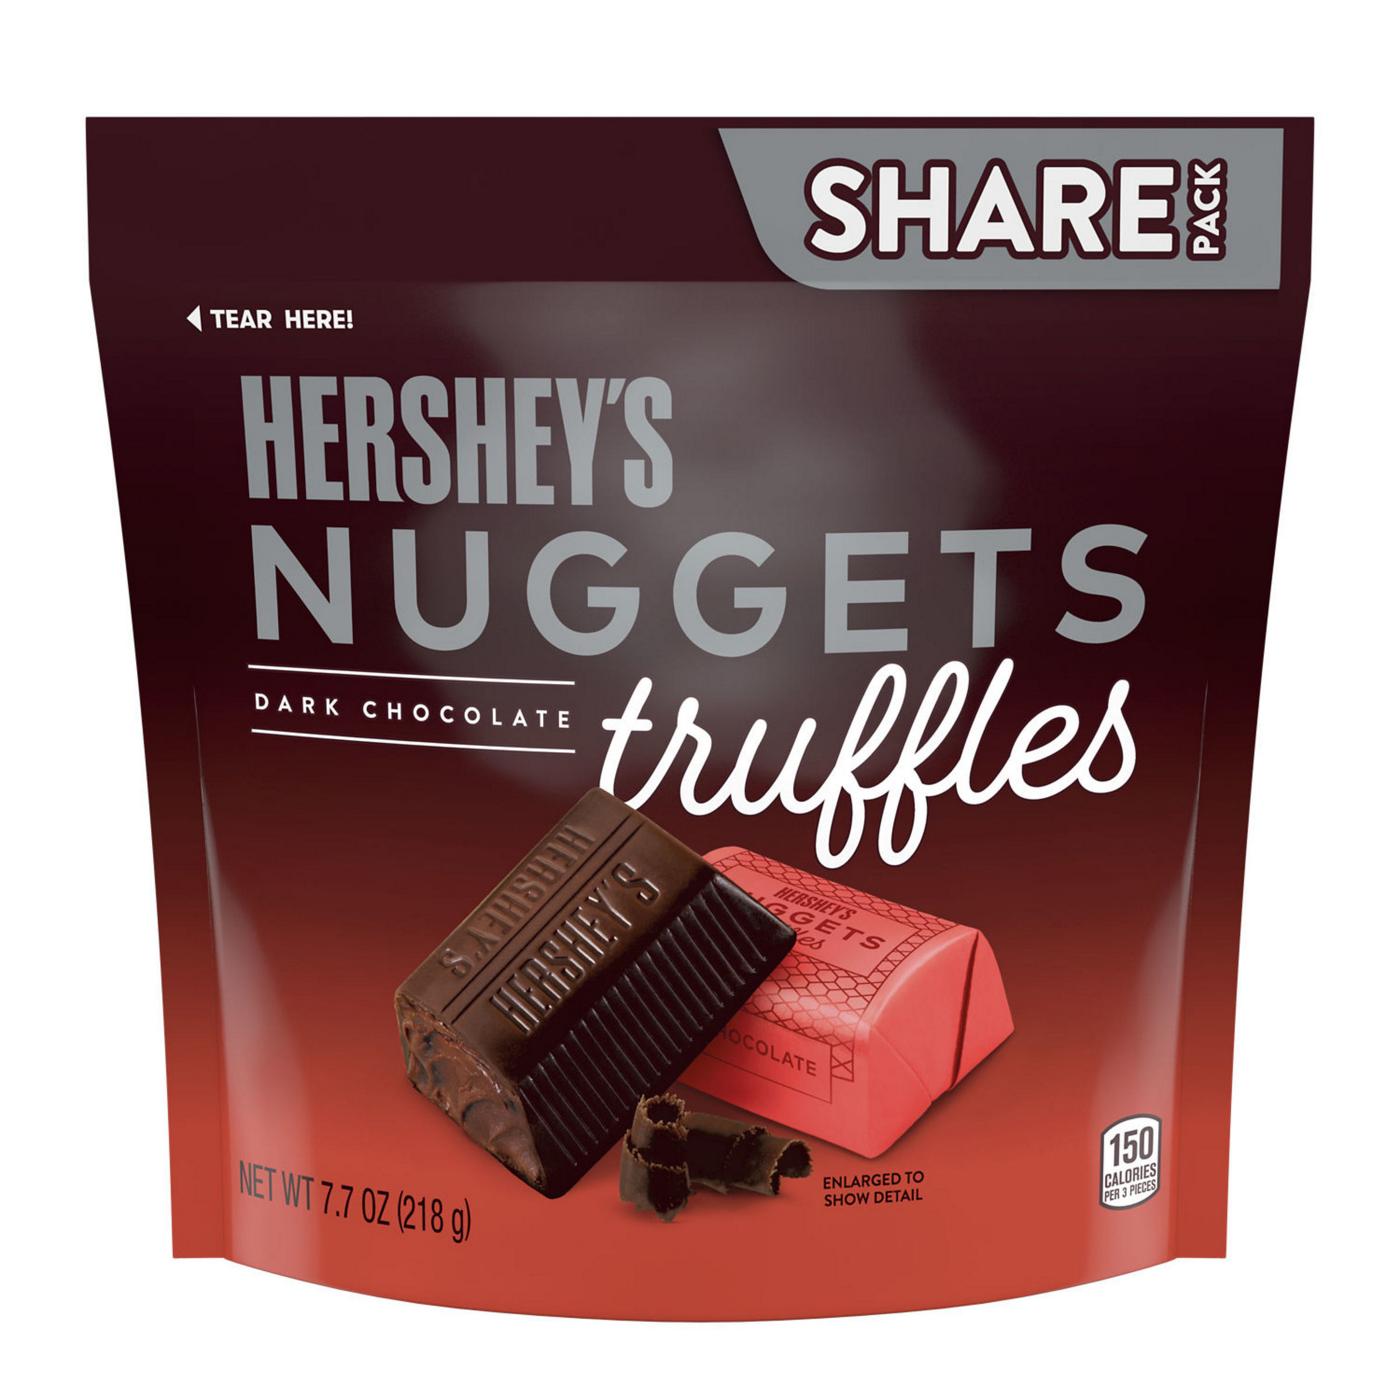 Hershey's Nuggets Dark Chocolate Truffles - Share Pack; image 1 of 7